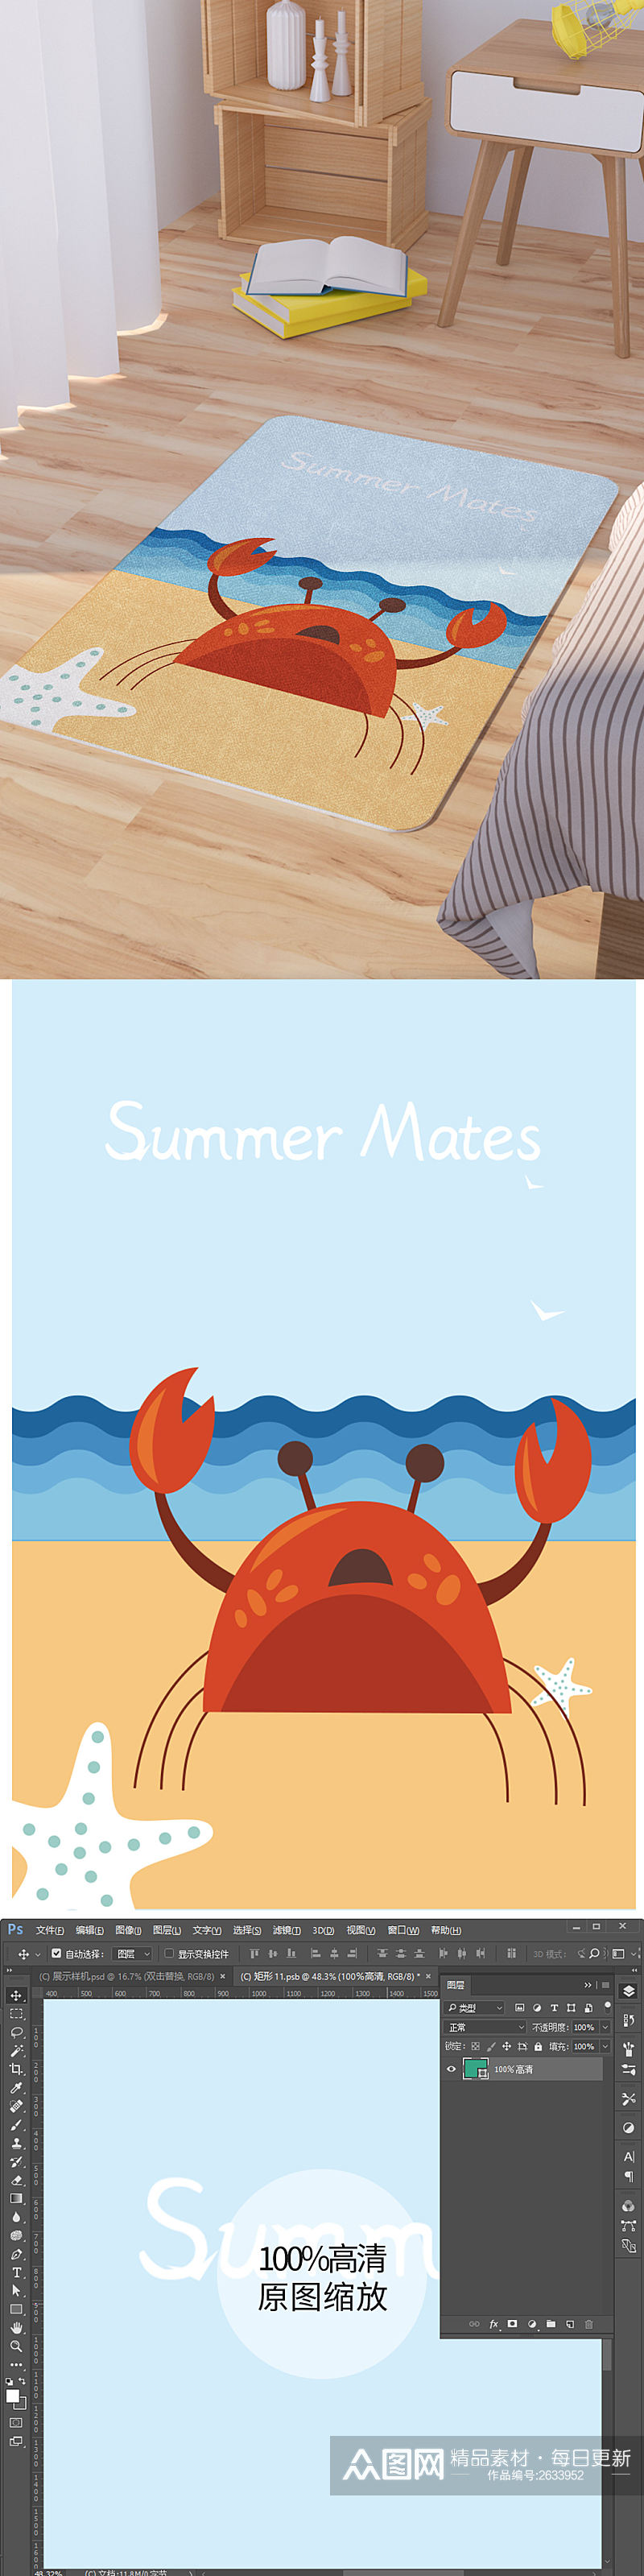 矢量手绘卡通可爱螃蟹脚垫地毯图案素材